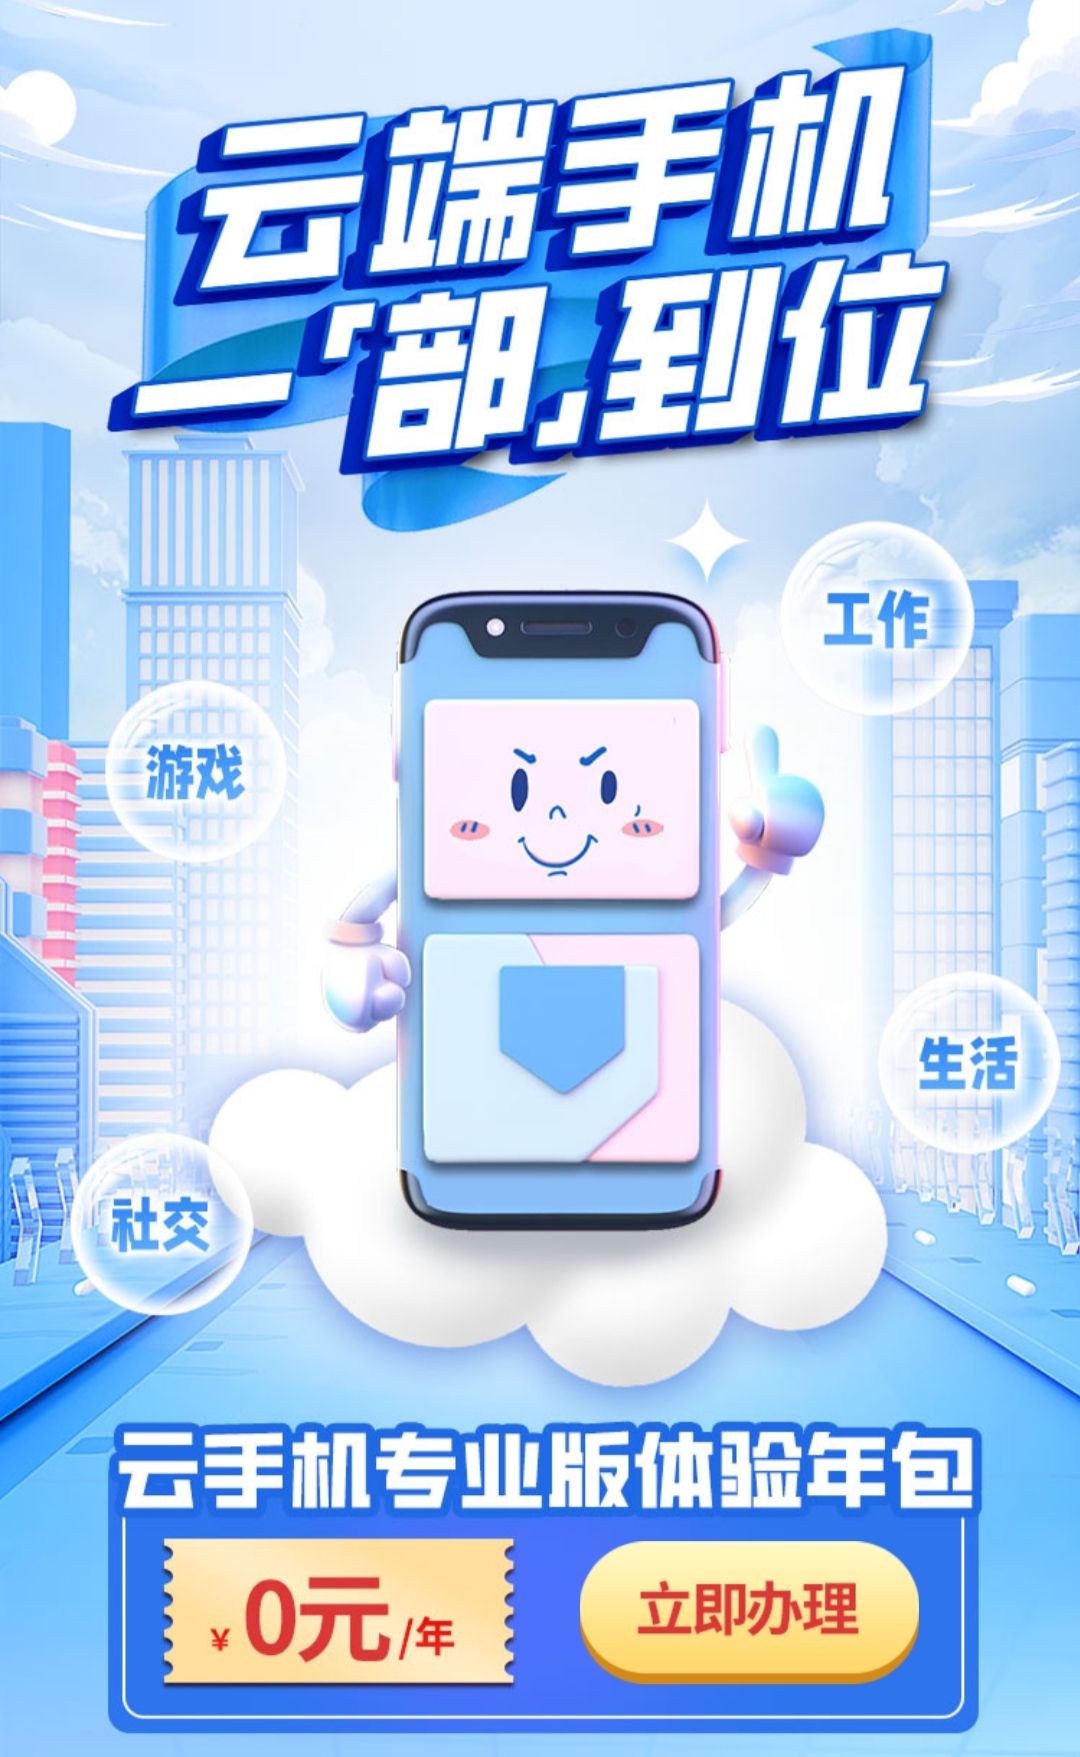 北京移动用户可免费领取一年云手机